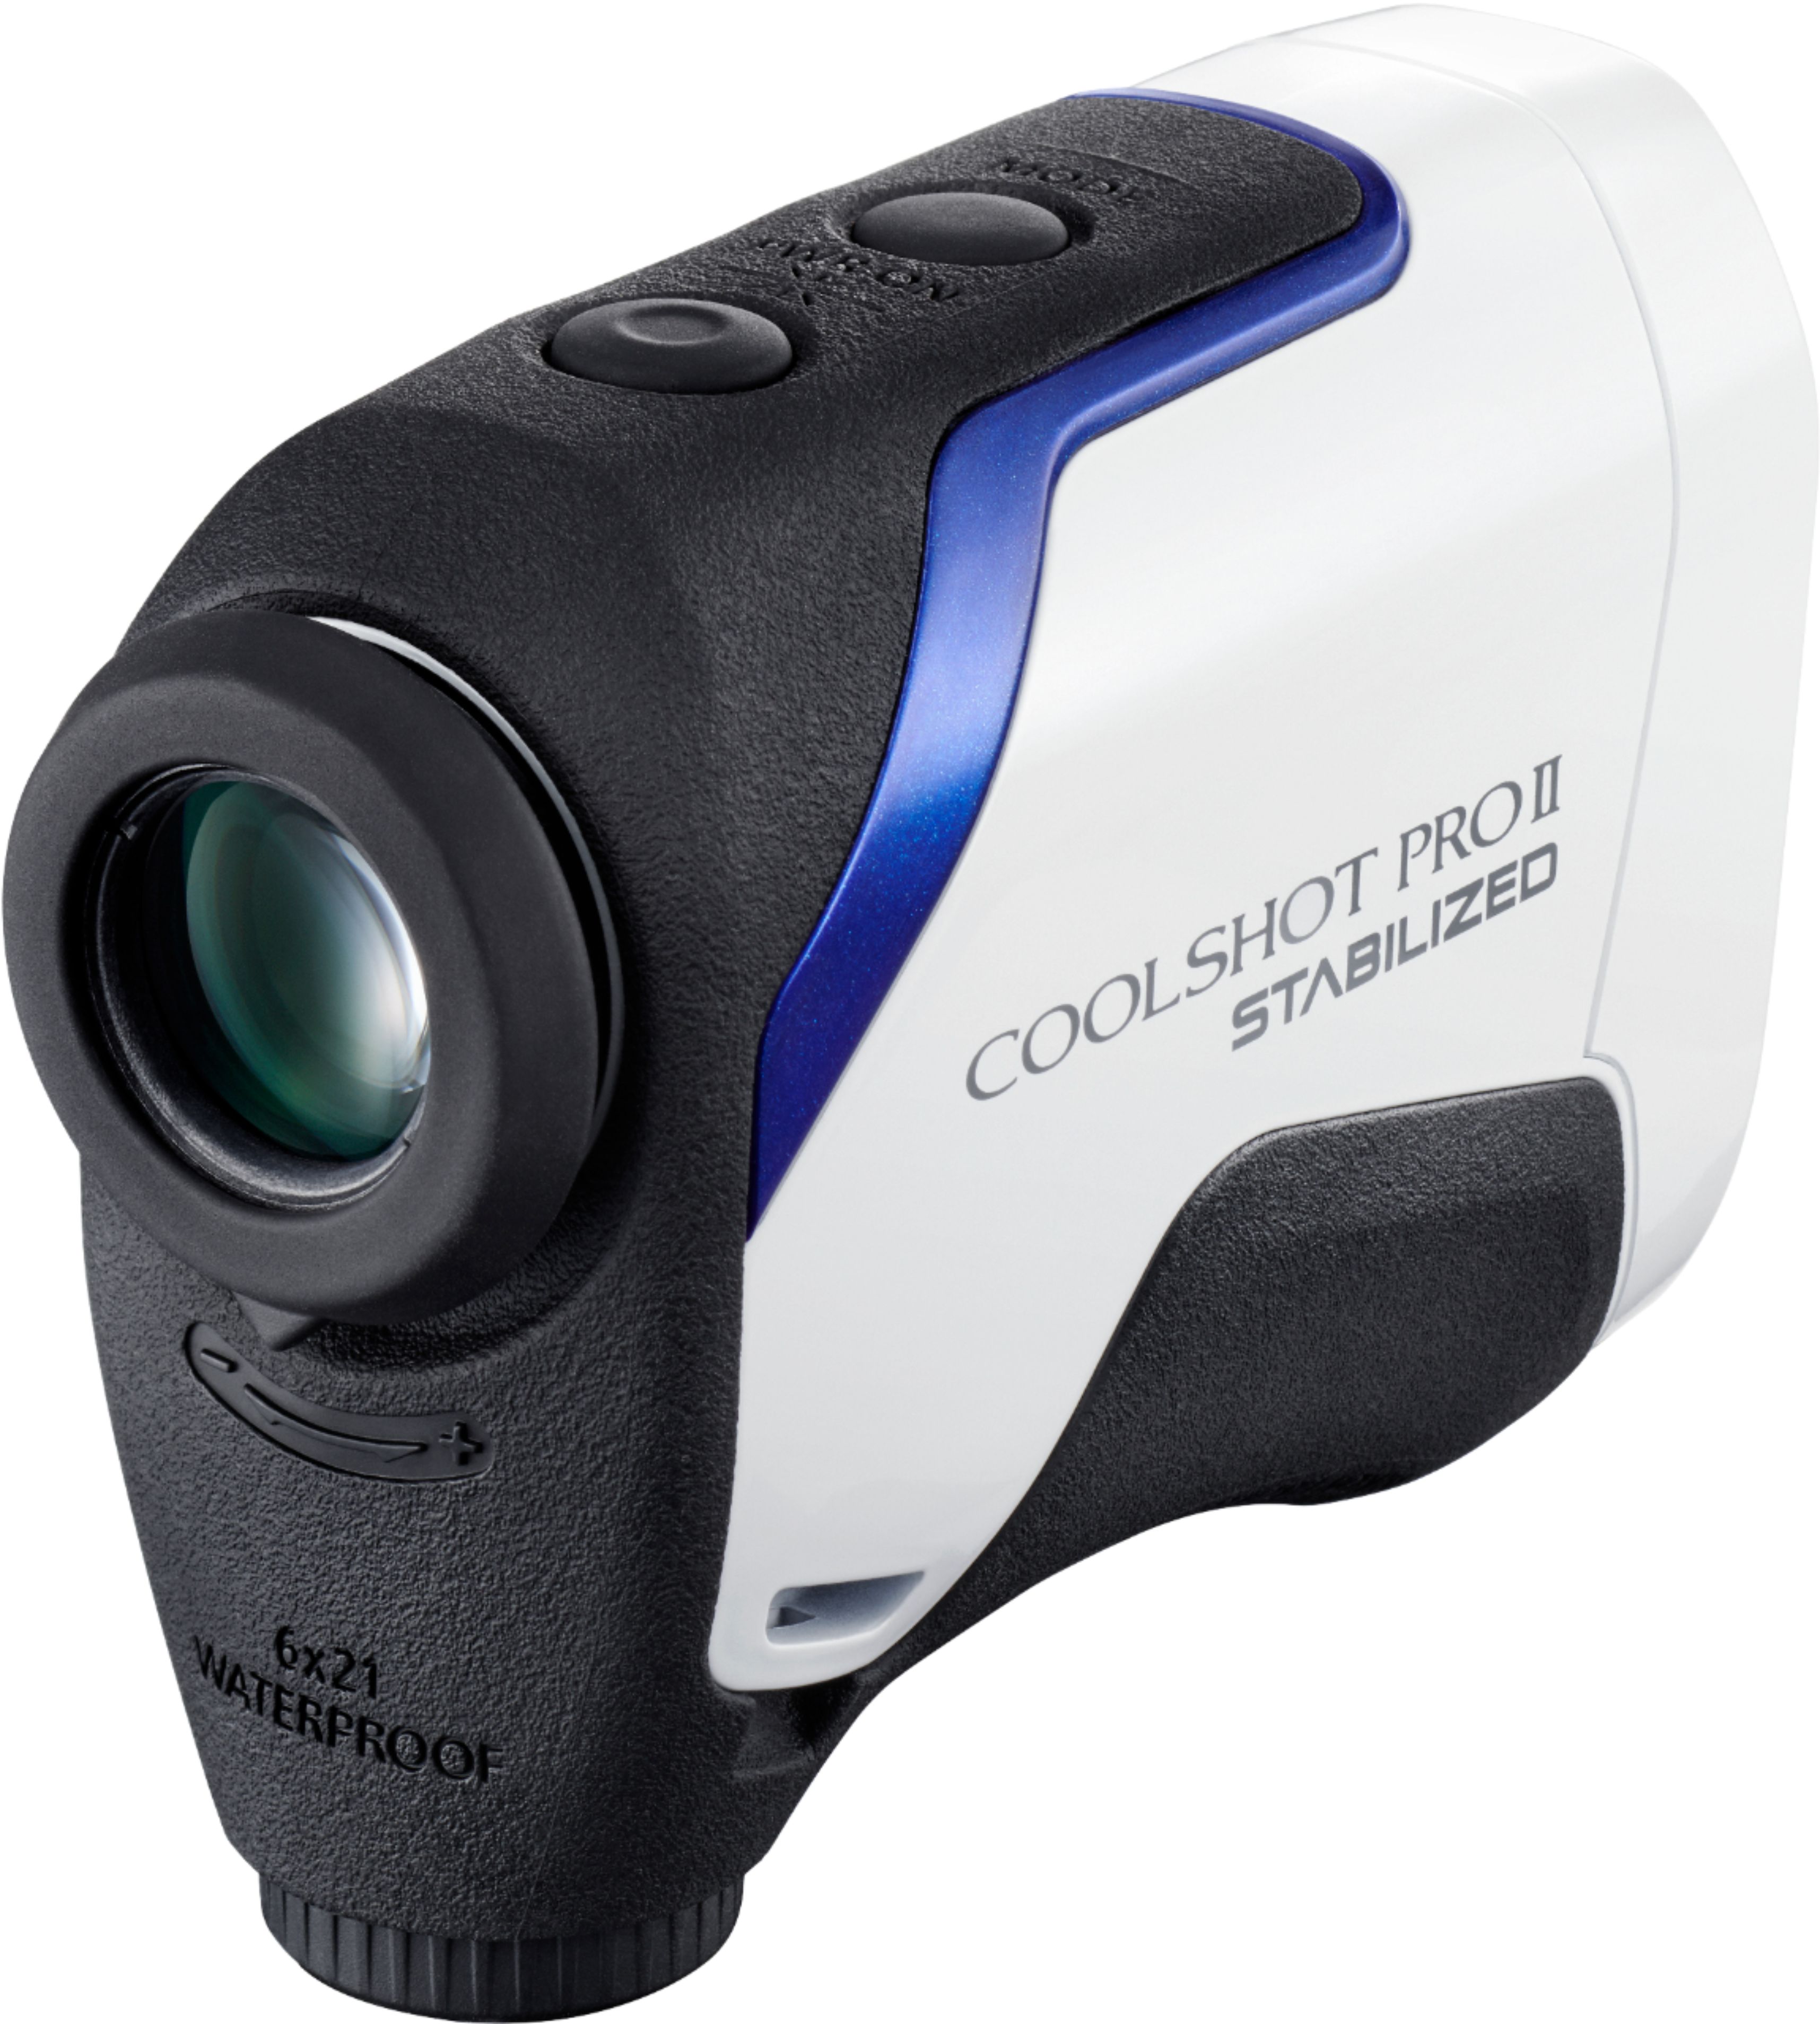 Nikon Coolshot ProII Stabilized Golf Laser Rangefinder White/Blue